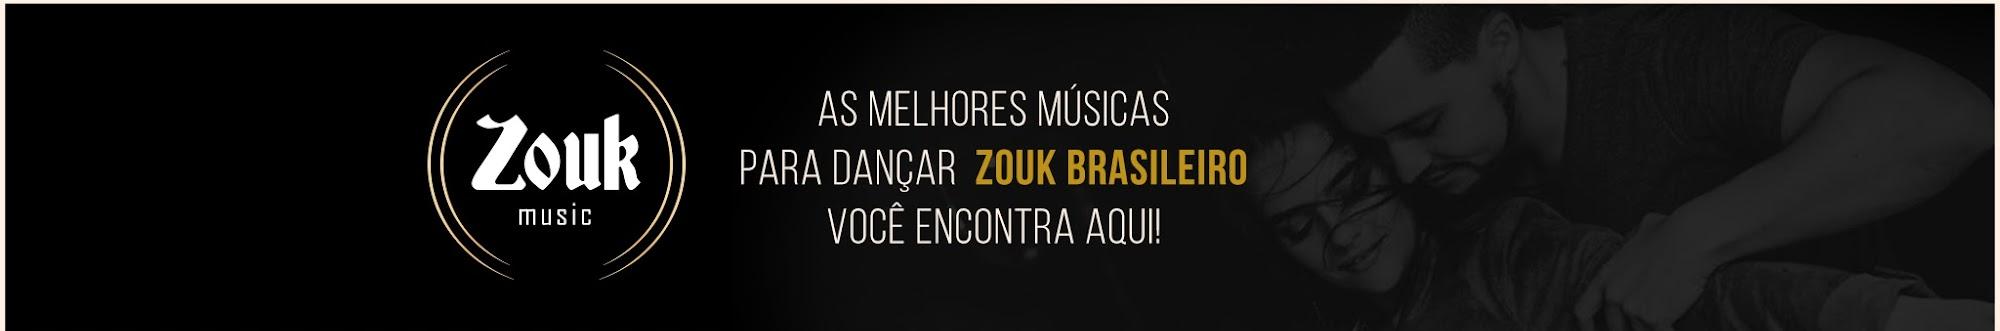 Zouk Music